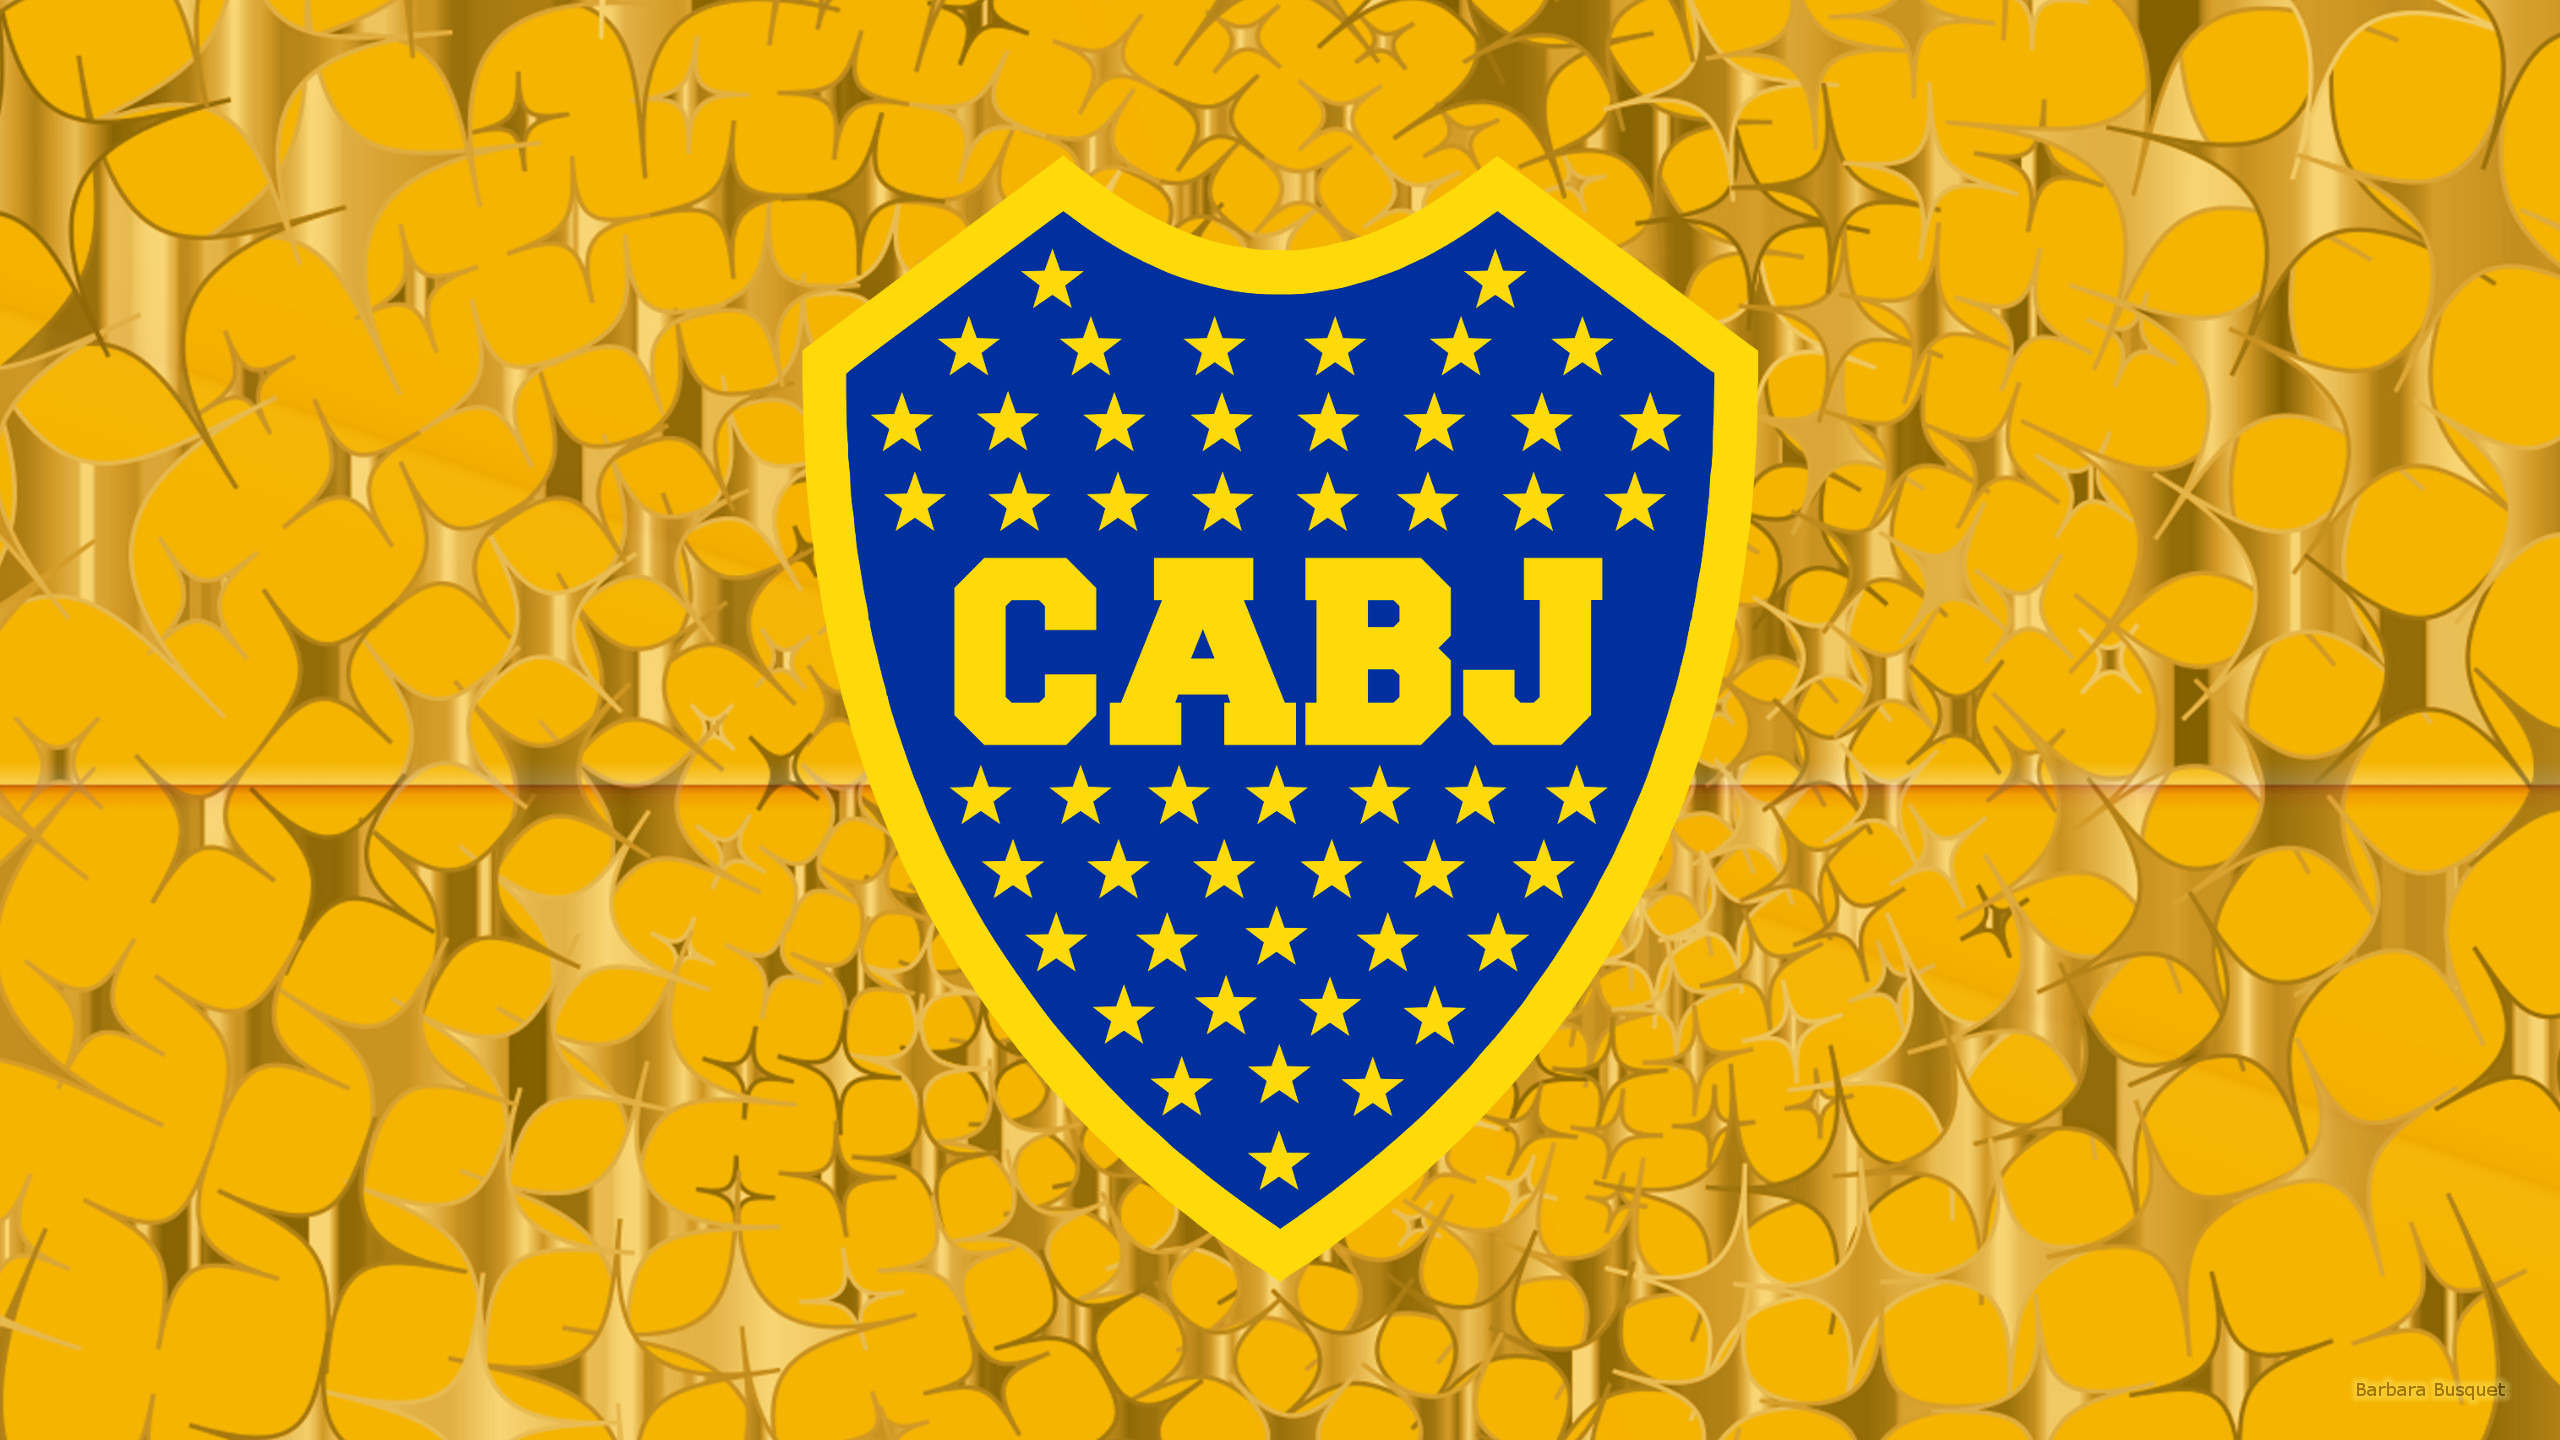 CA Boca Juniors football club's HD Wallpaper